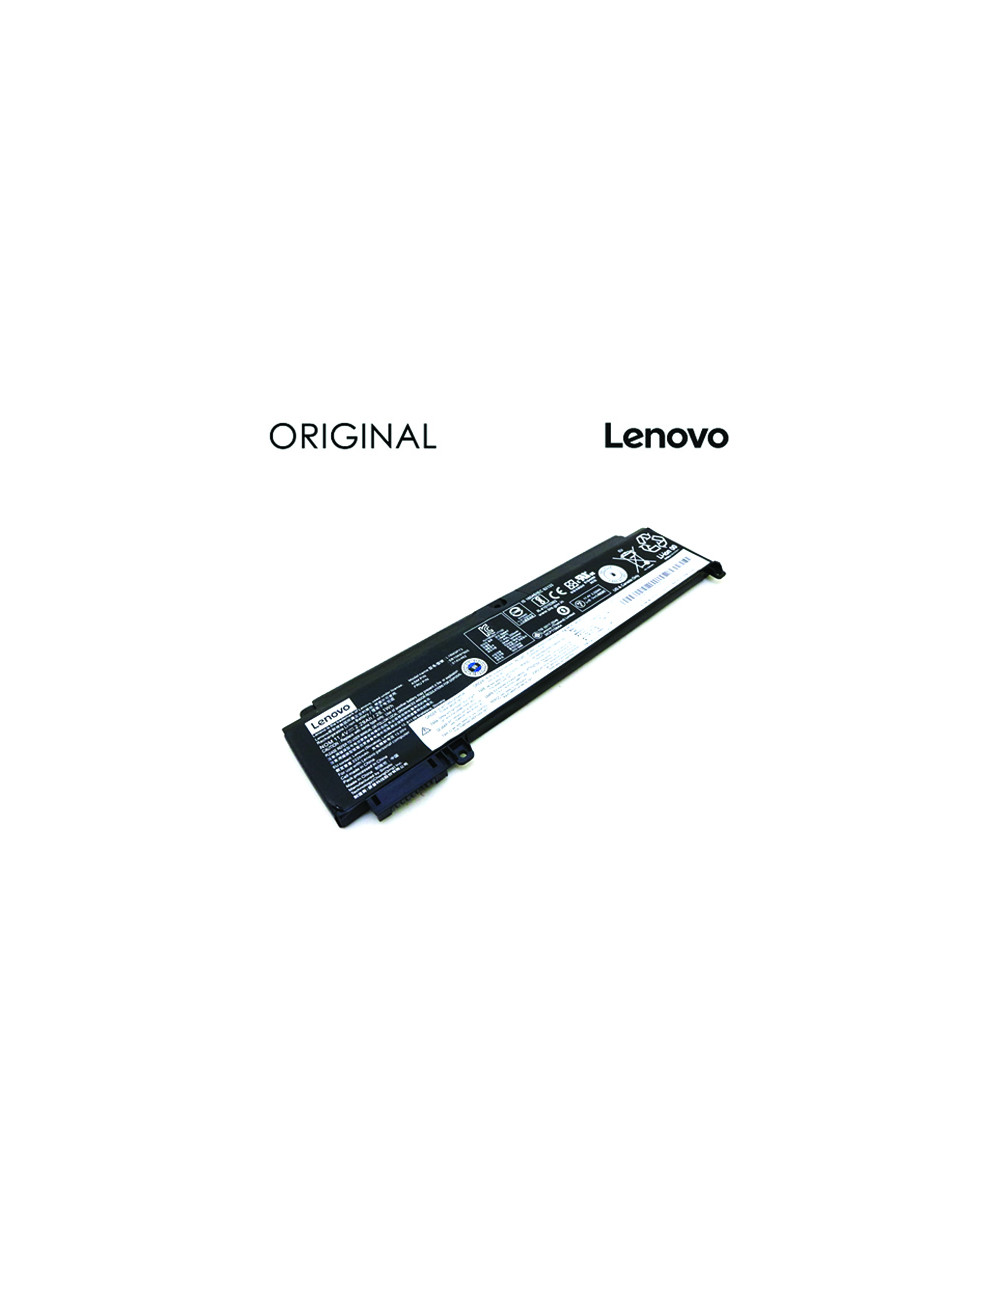 Notebook battery LENOVO L16M3P73, SB10J79003 01AV406, 2274mAh, Original